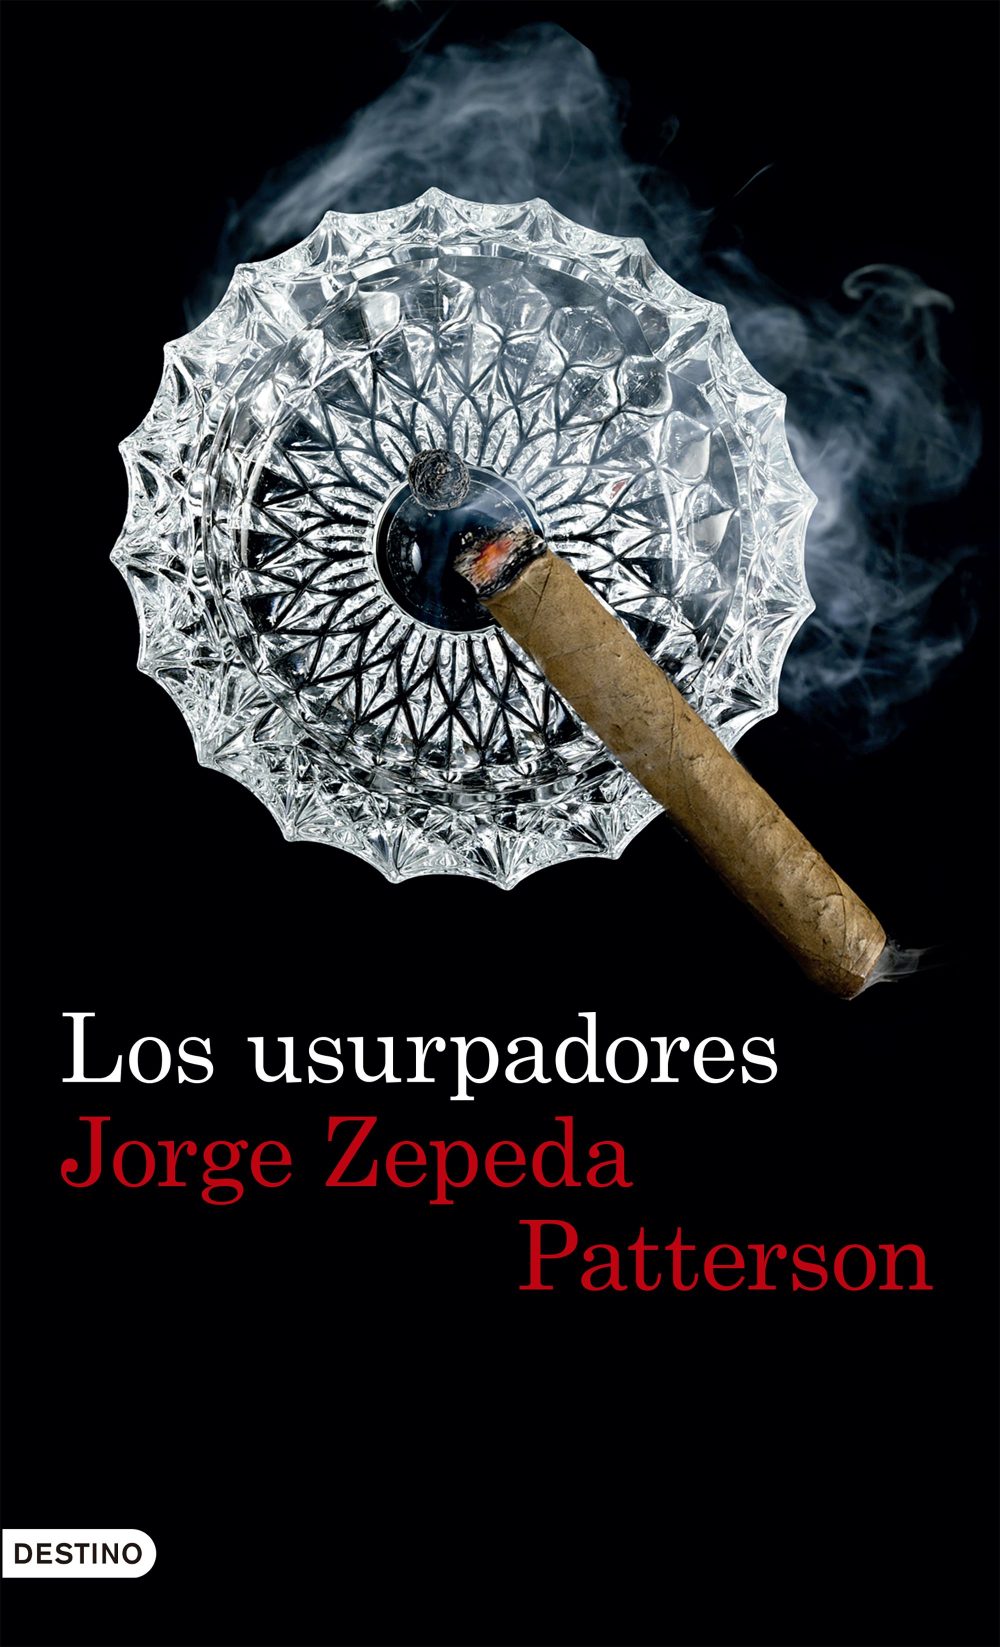 Jorge Zepeda novela el peor atentado en Occidente desde el ataque a las Torres Gemelas